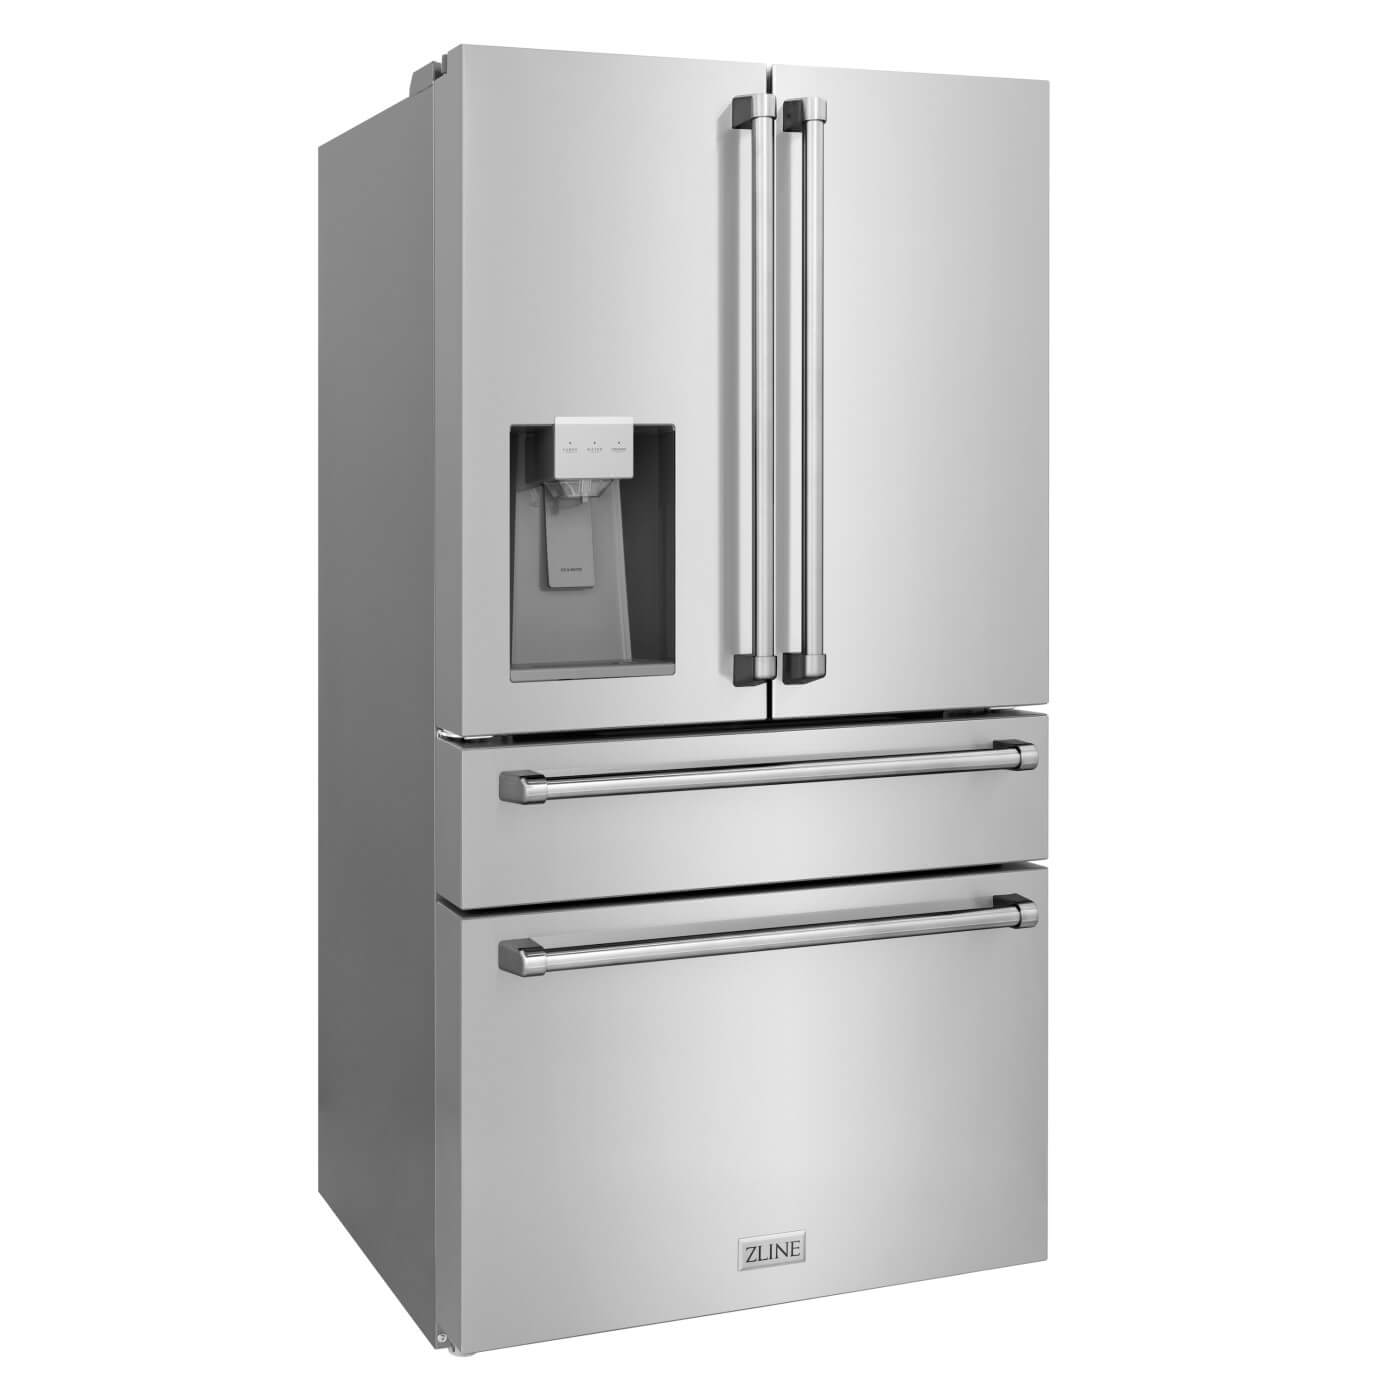 ZLINE Counter-Depth Refrigerator with Water Dispenser